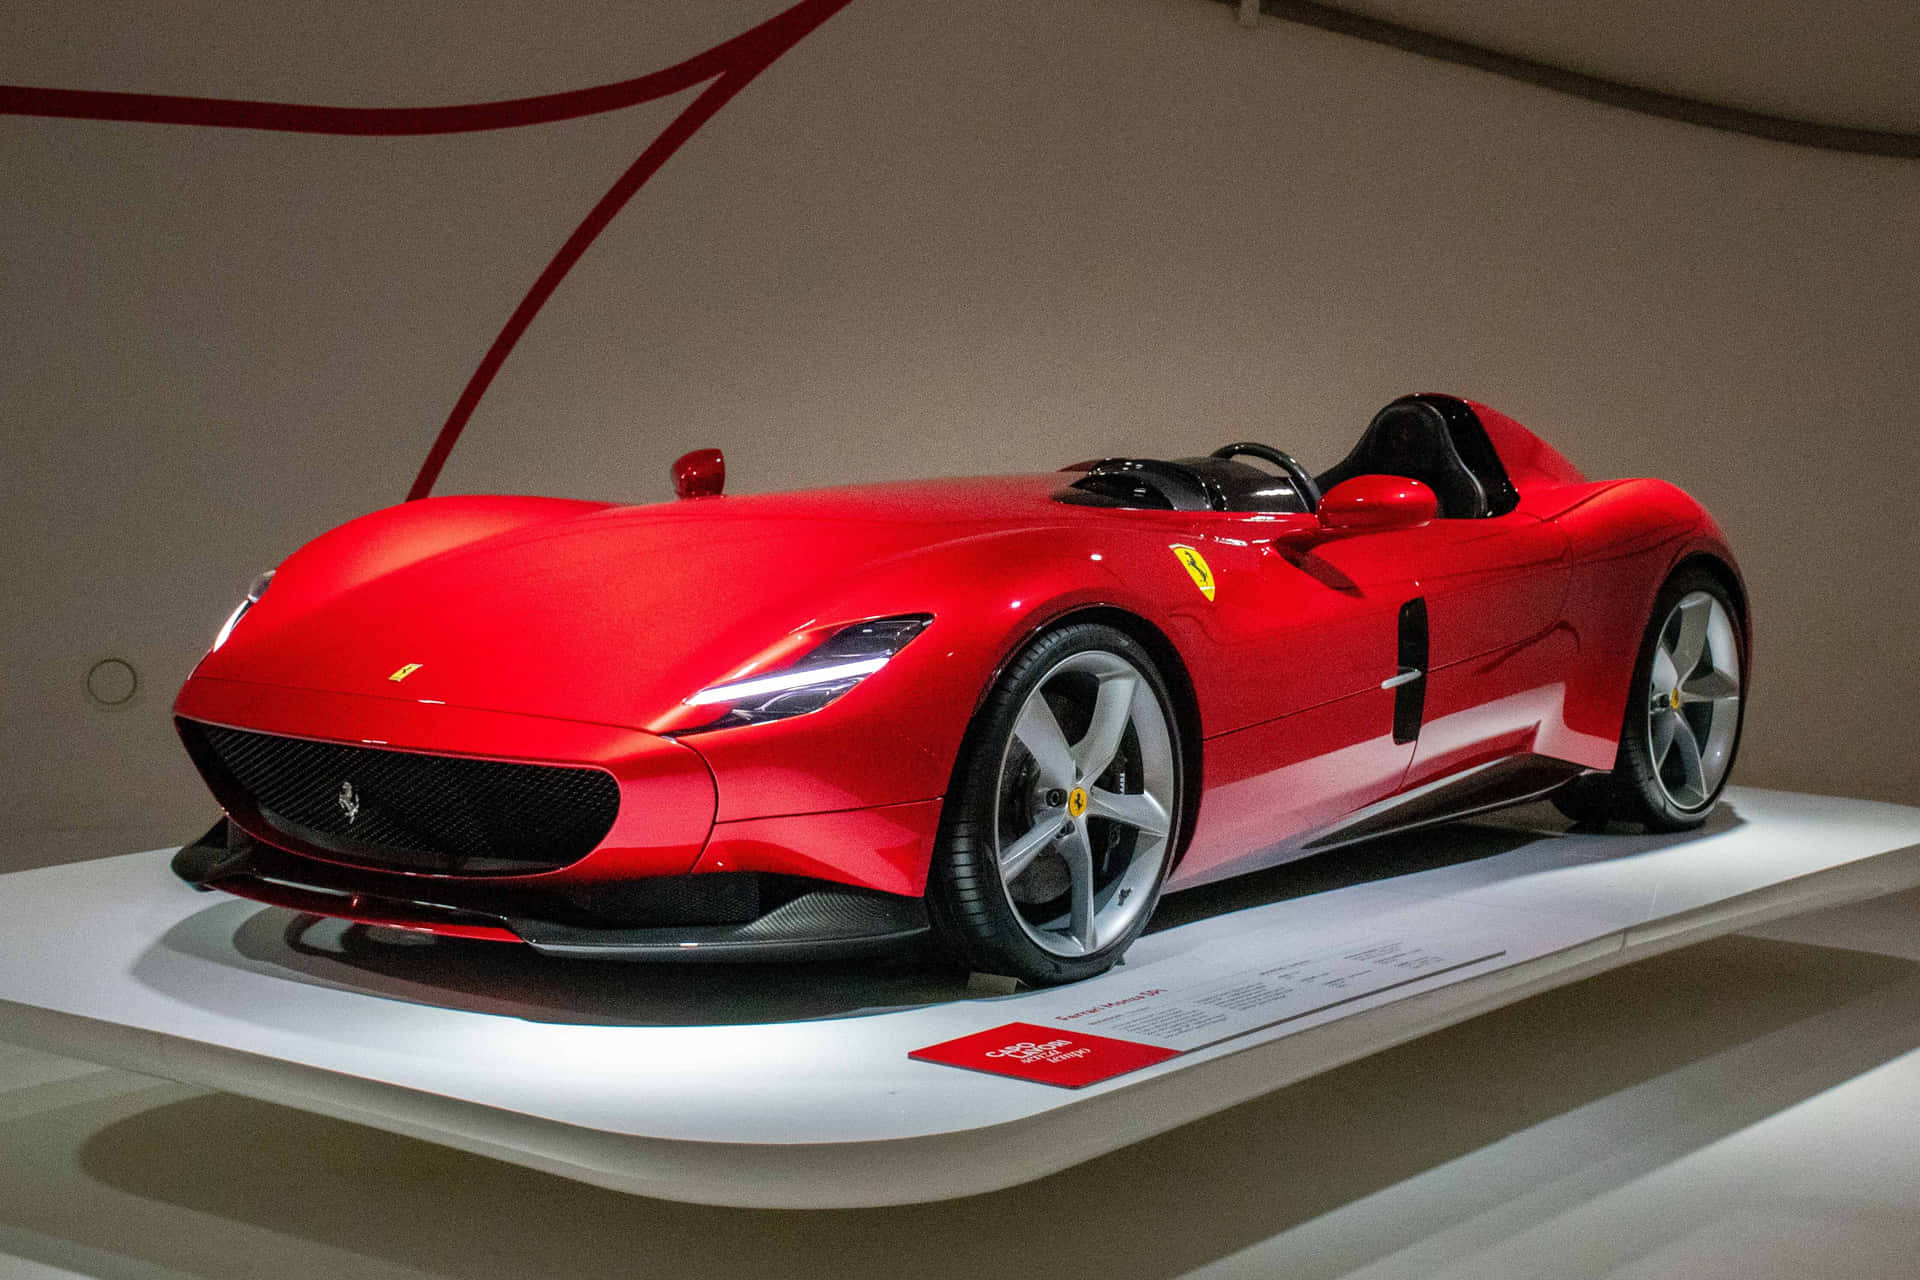 Ammirala Velocità E La Bellezza Iconica Di Una Classica Ferrari.